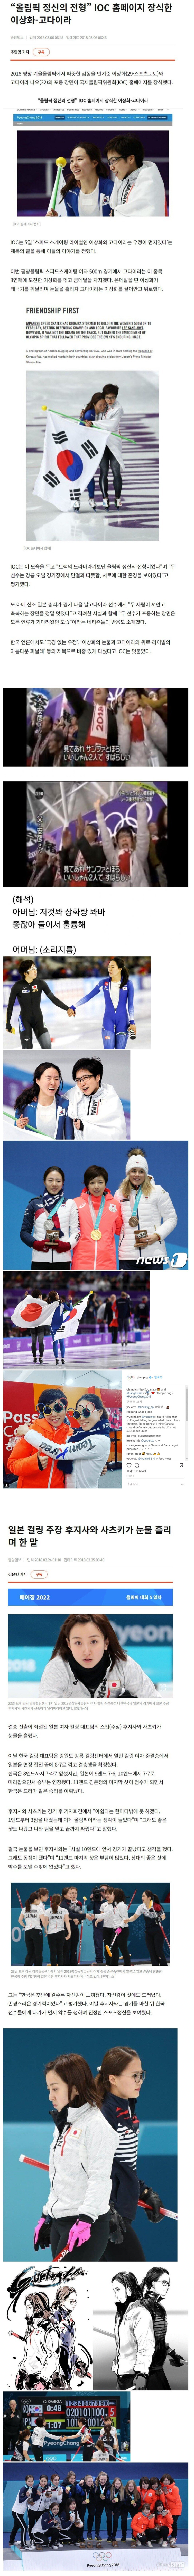 Pyeongchang Olympics match between Korea and Japan.jpg.